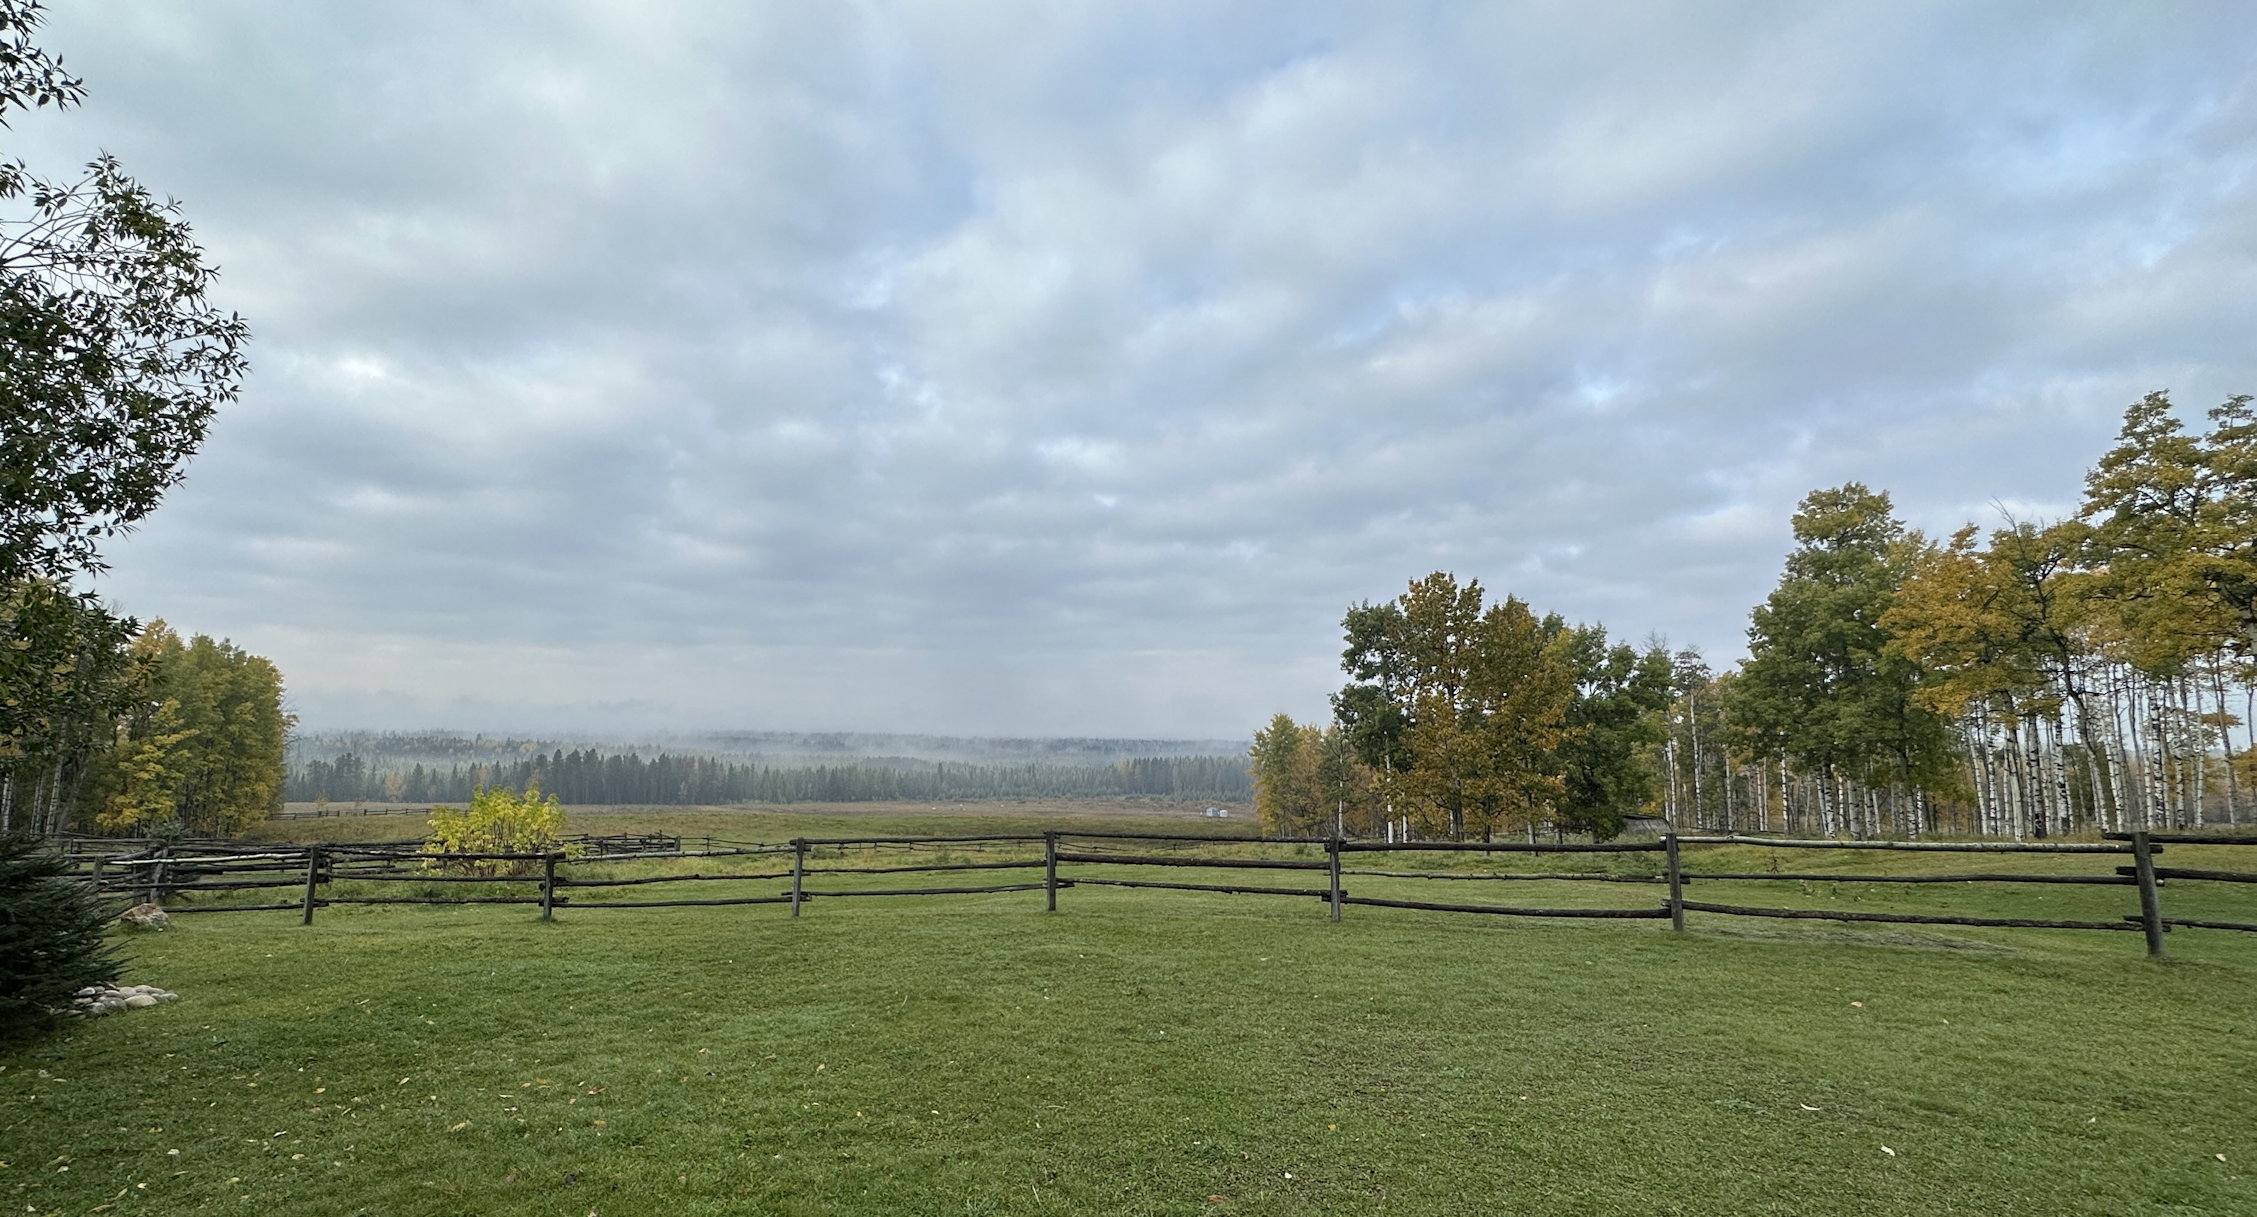 Blick über das Gelände der Ranch, grüne Wiesen, Zäune und weit im Hintergrund unter grauem Himmel der Wald mit leichtem Nebel